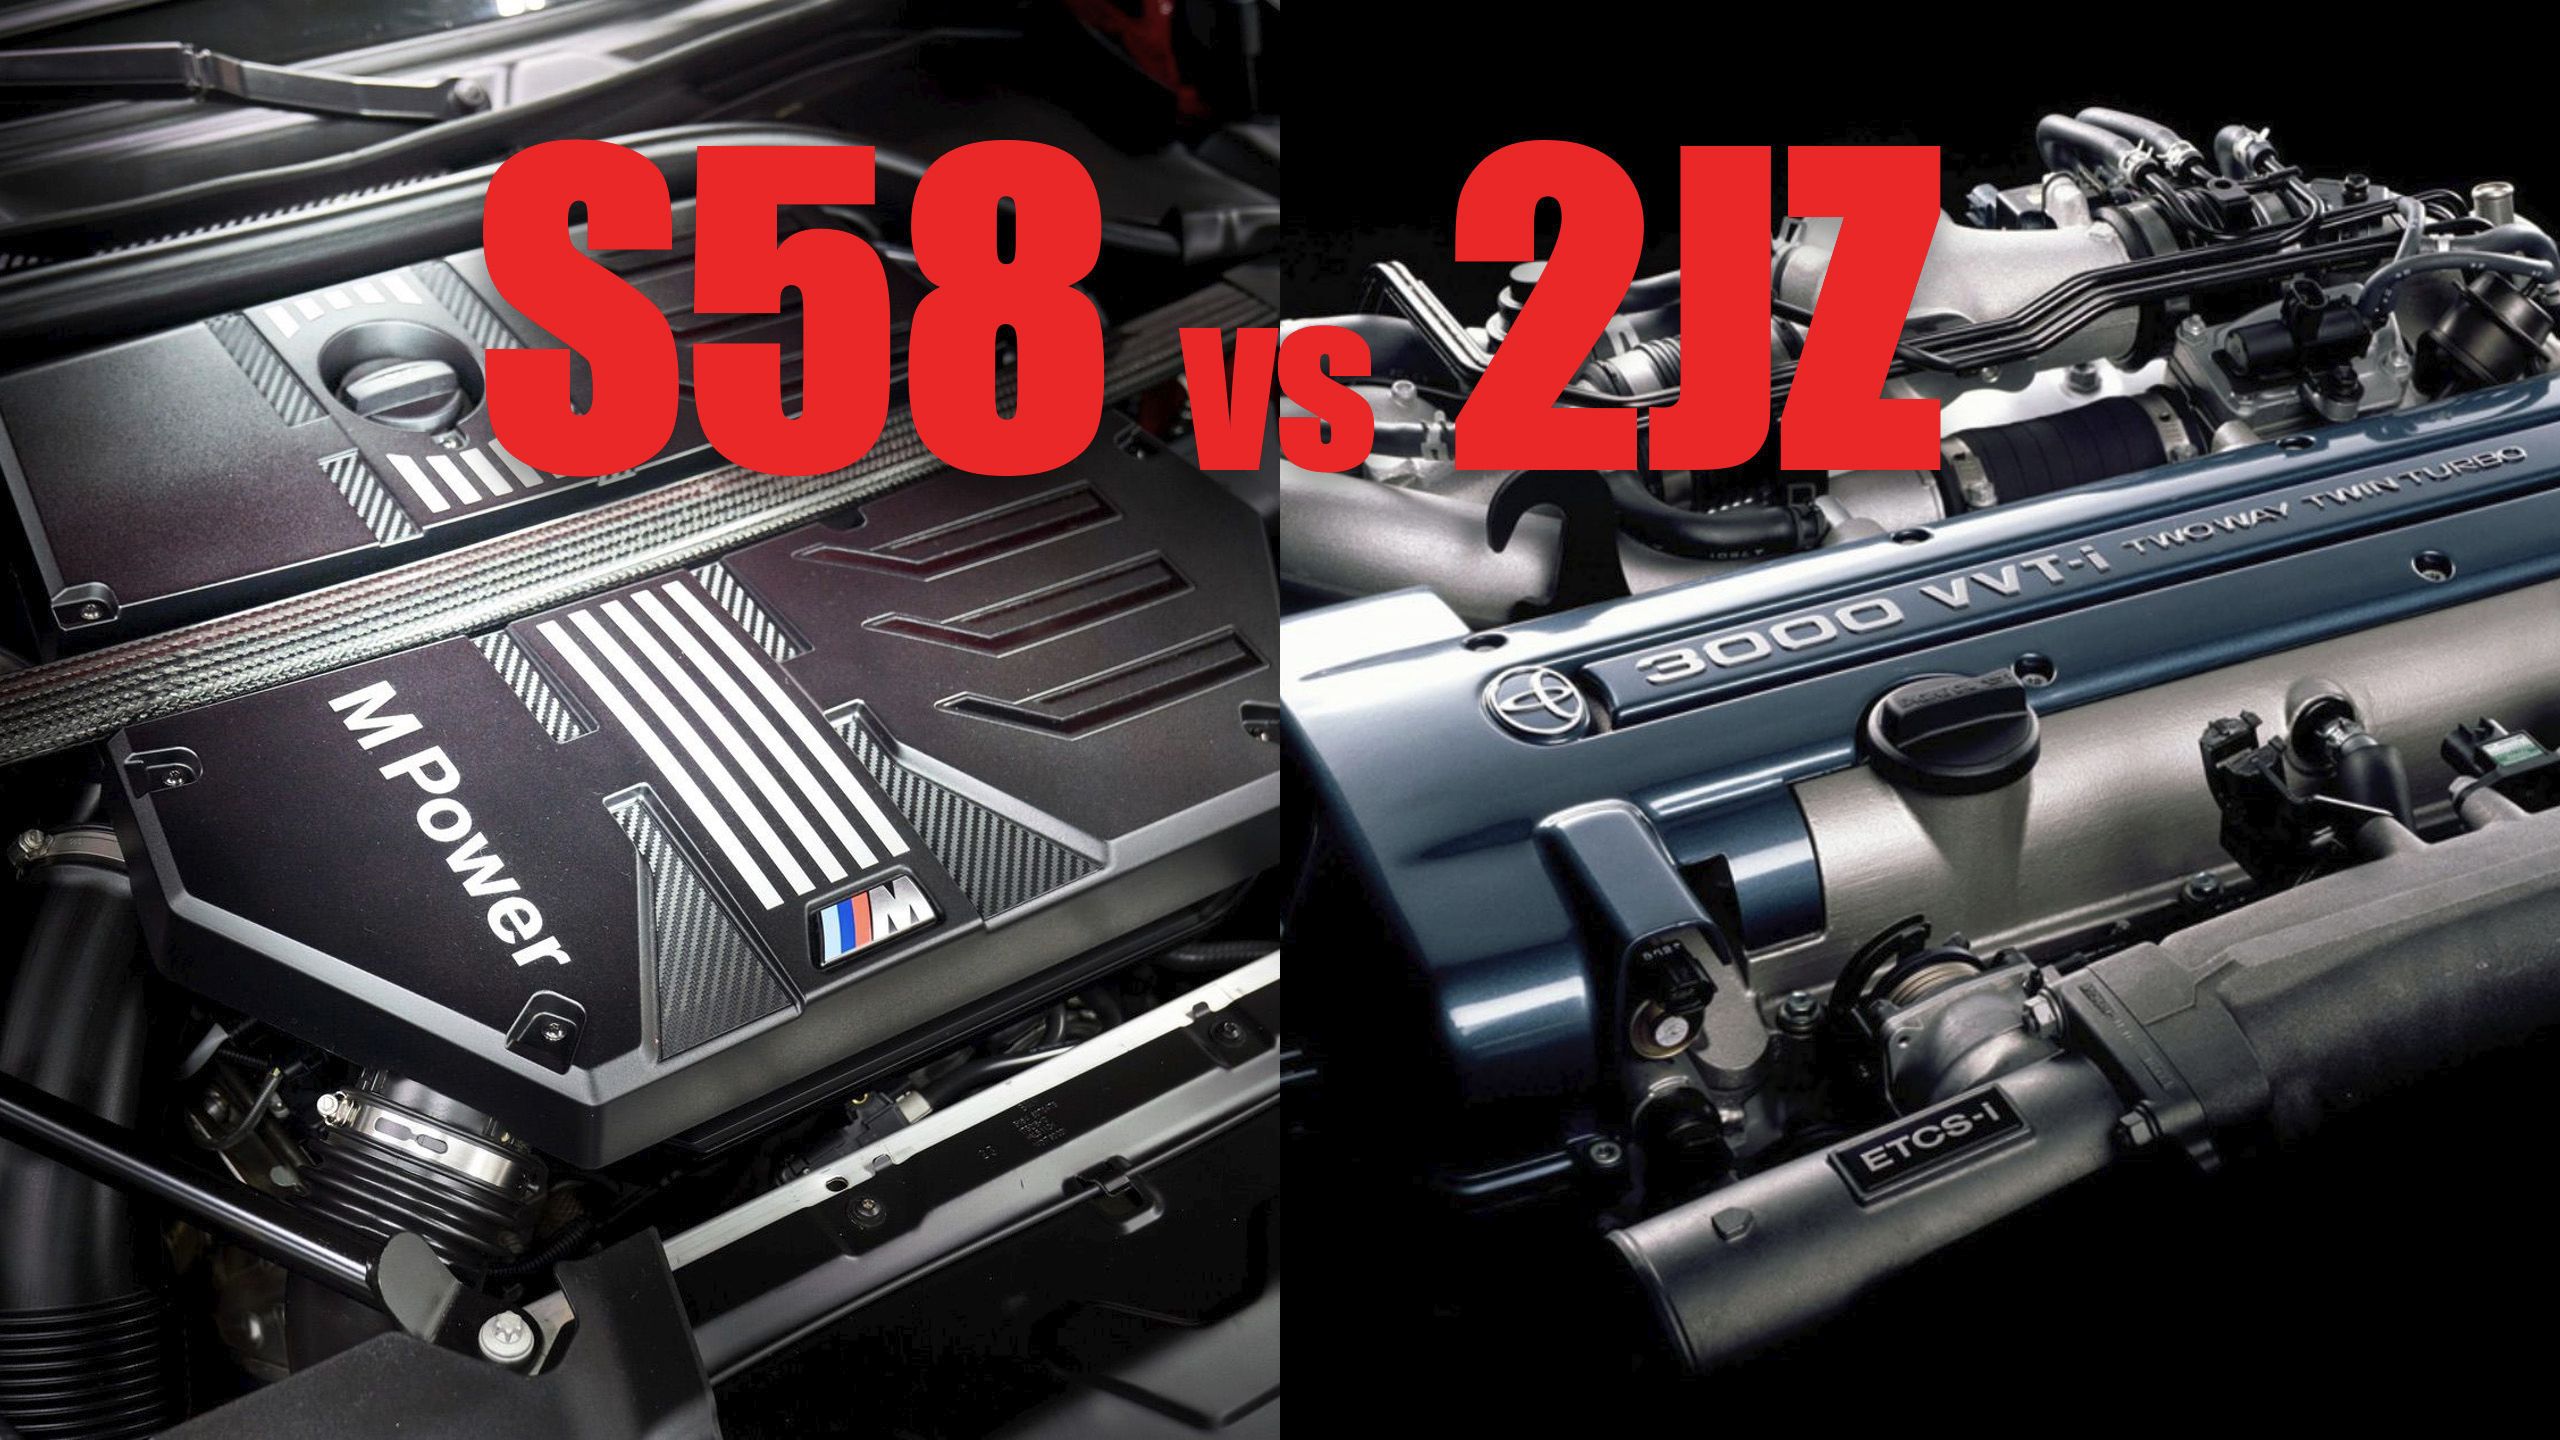 宝马S58、丰田2JZ-GTE经典设计对比